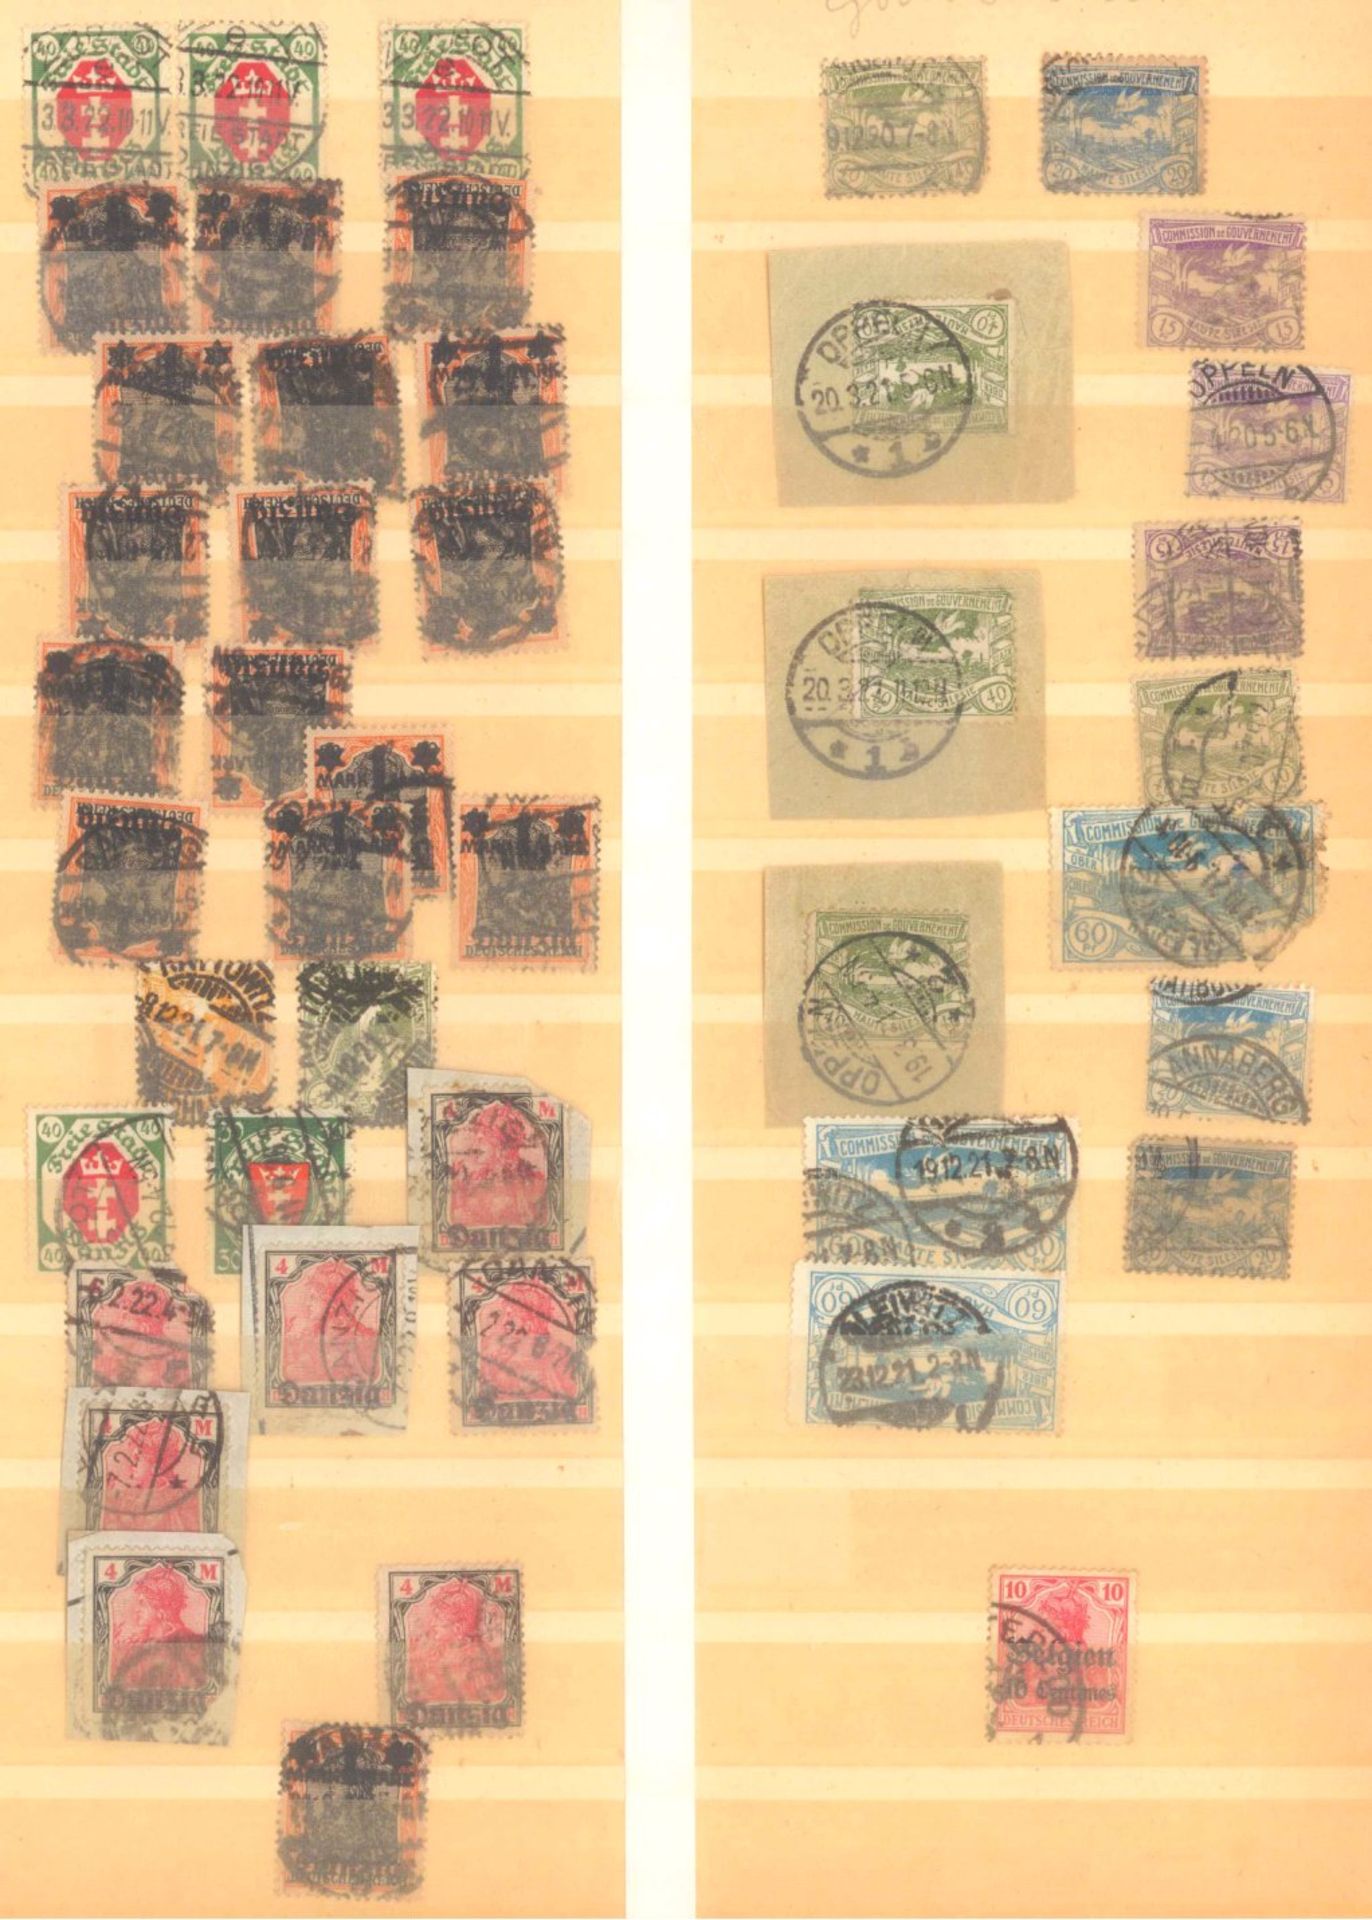 FRANKENTHALER NACHLASSuriger Nachlass mit Briefmarken und Belegen. Dabei DeutschesReich, altes - Bild 15 aus 46